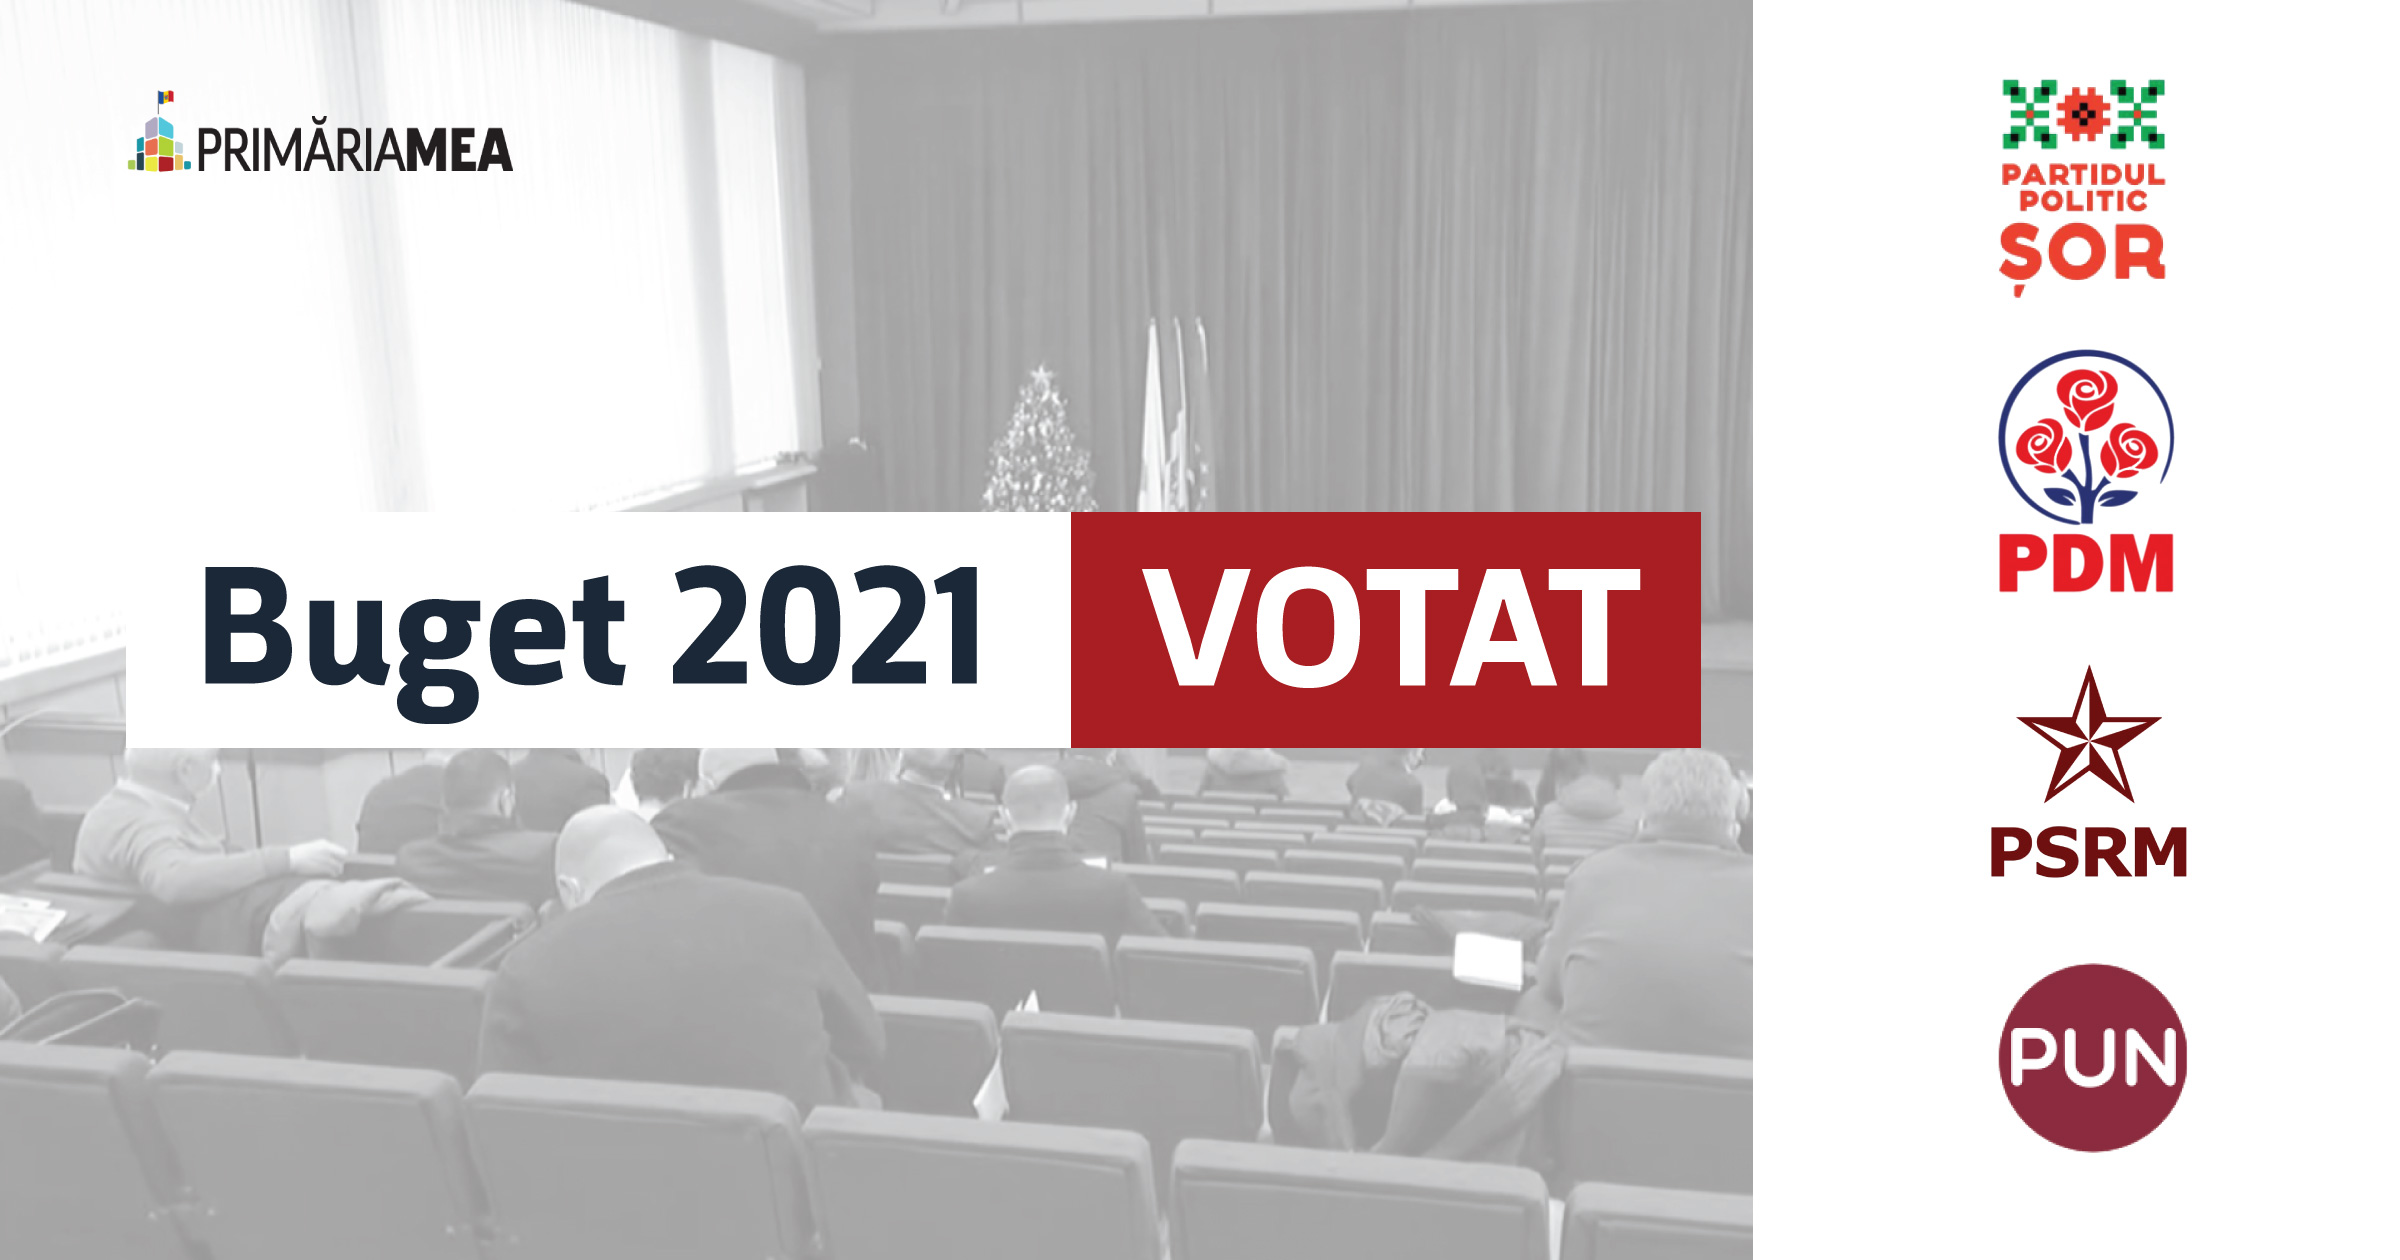 Bugetul municipal 2021 - votat în 5 minute Image